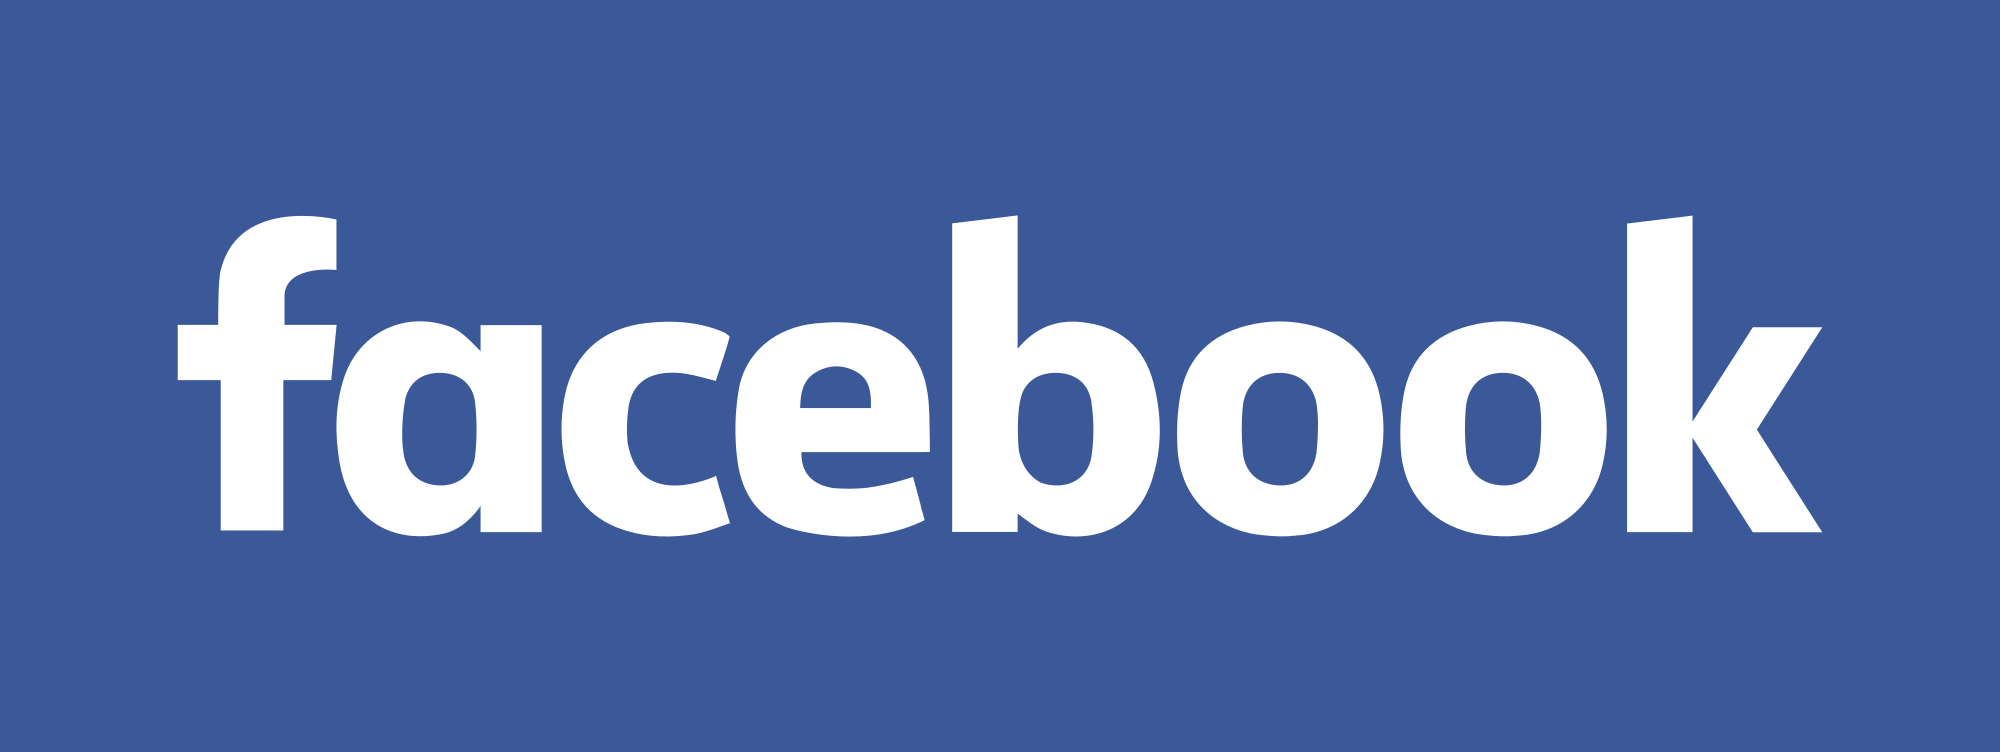 Káº¿t quáº£ hÃ¬nh áº£nh cho logo facebook